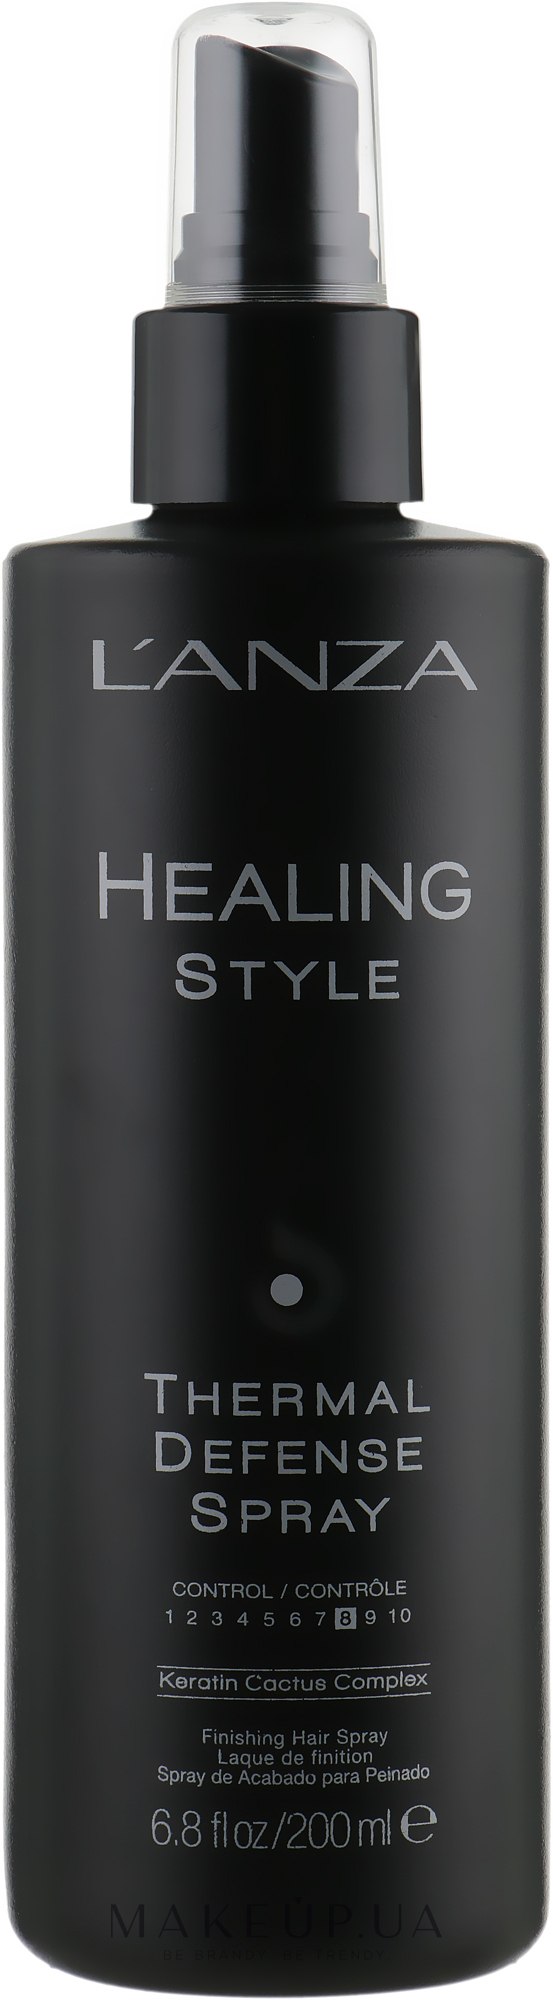 Захисний спрей для волосся - L'anza Healing Style Thermal Defense Spray — фото 200ml